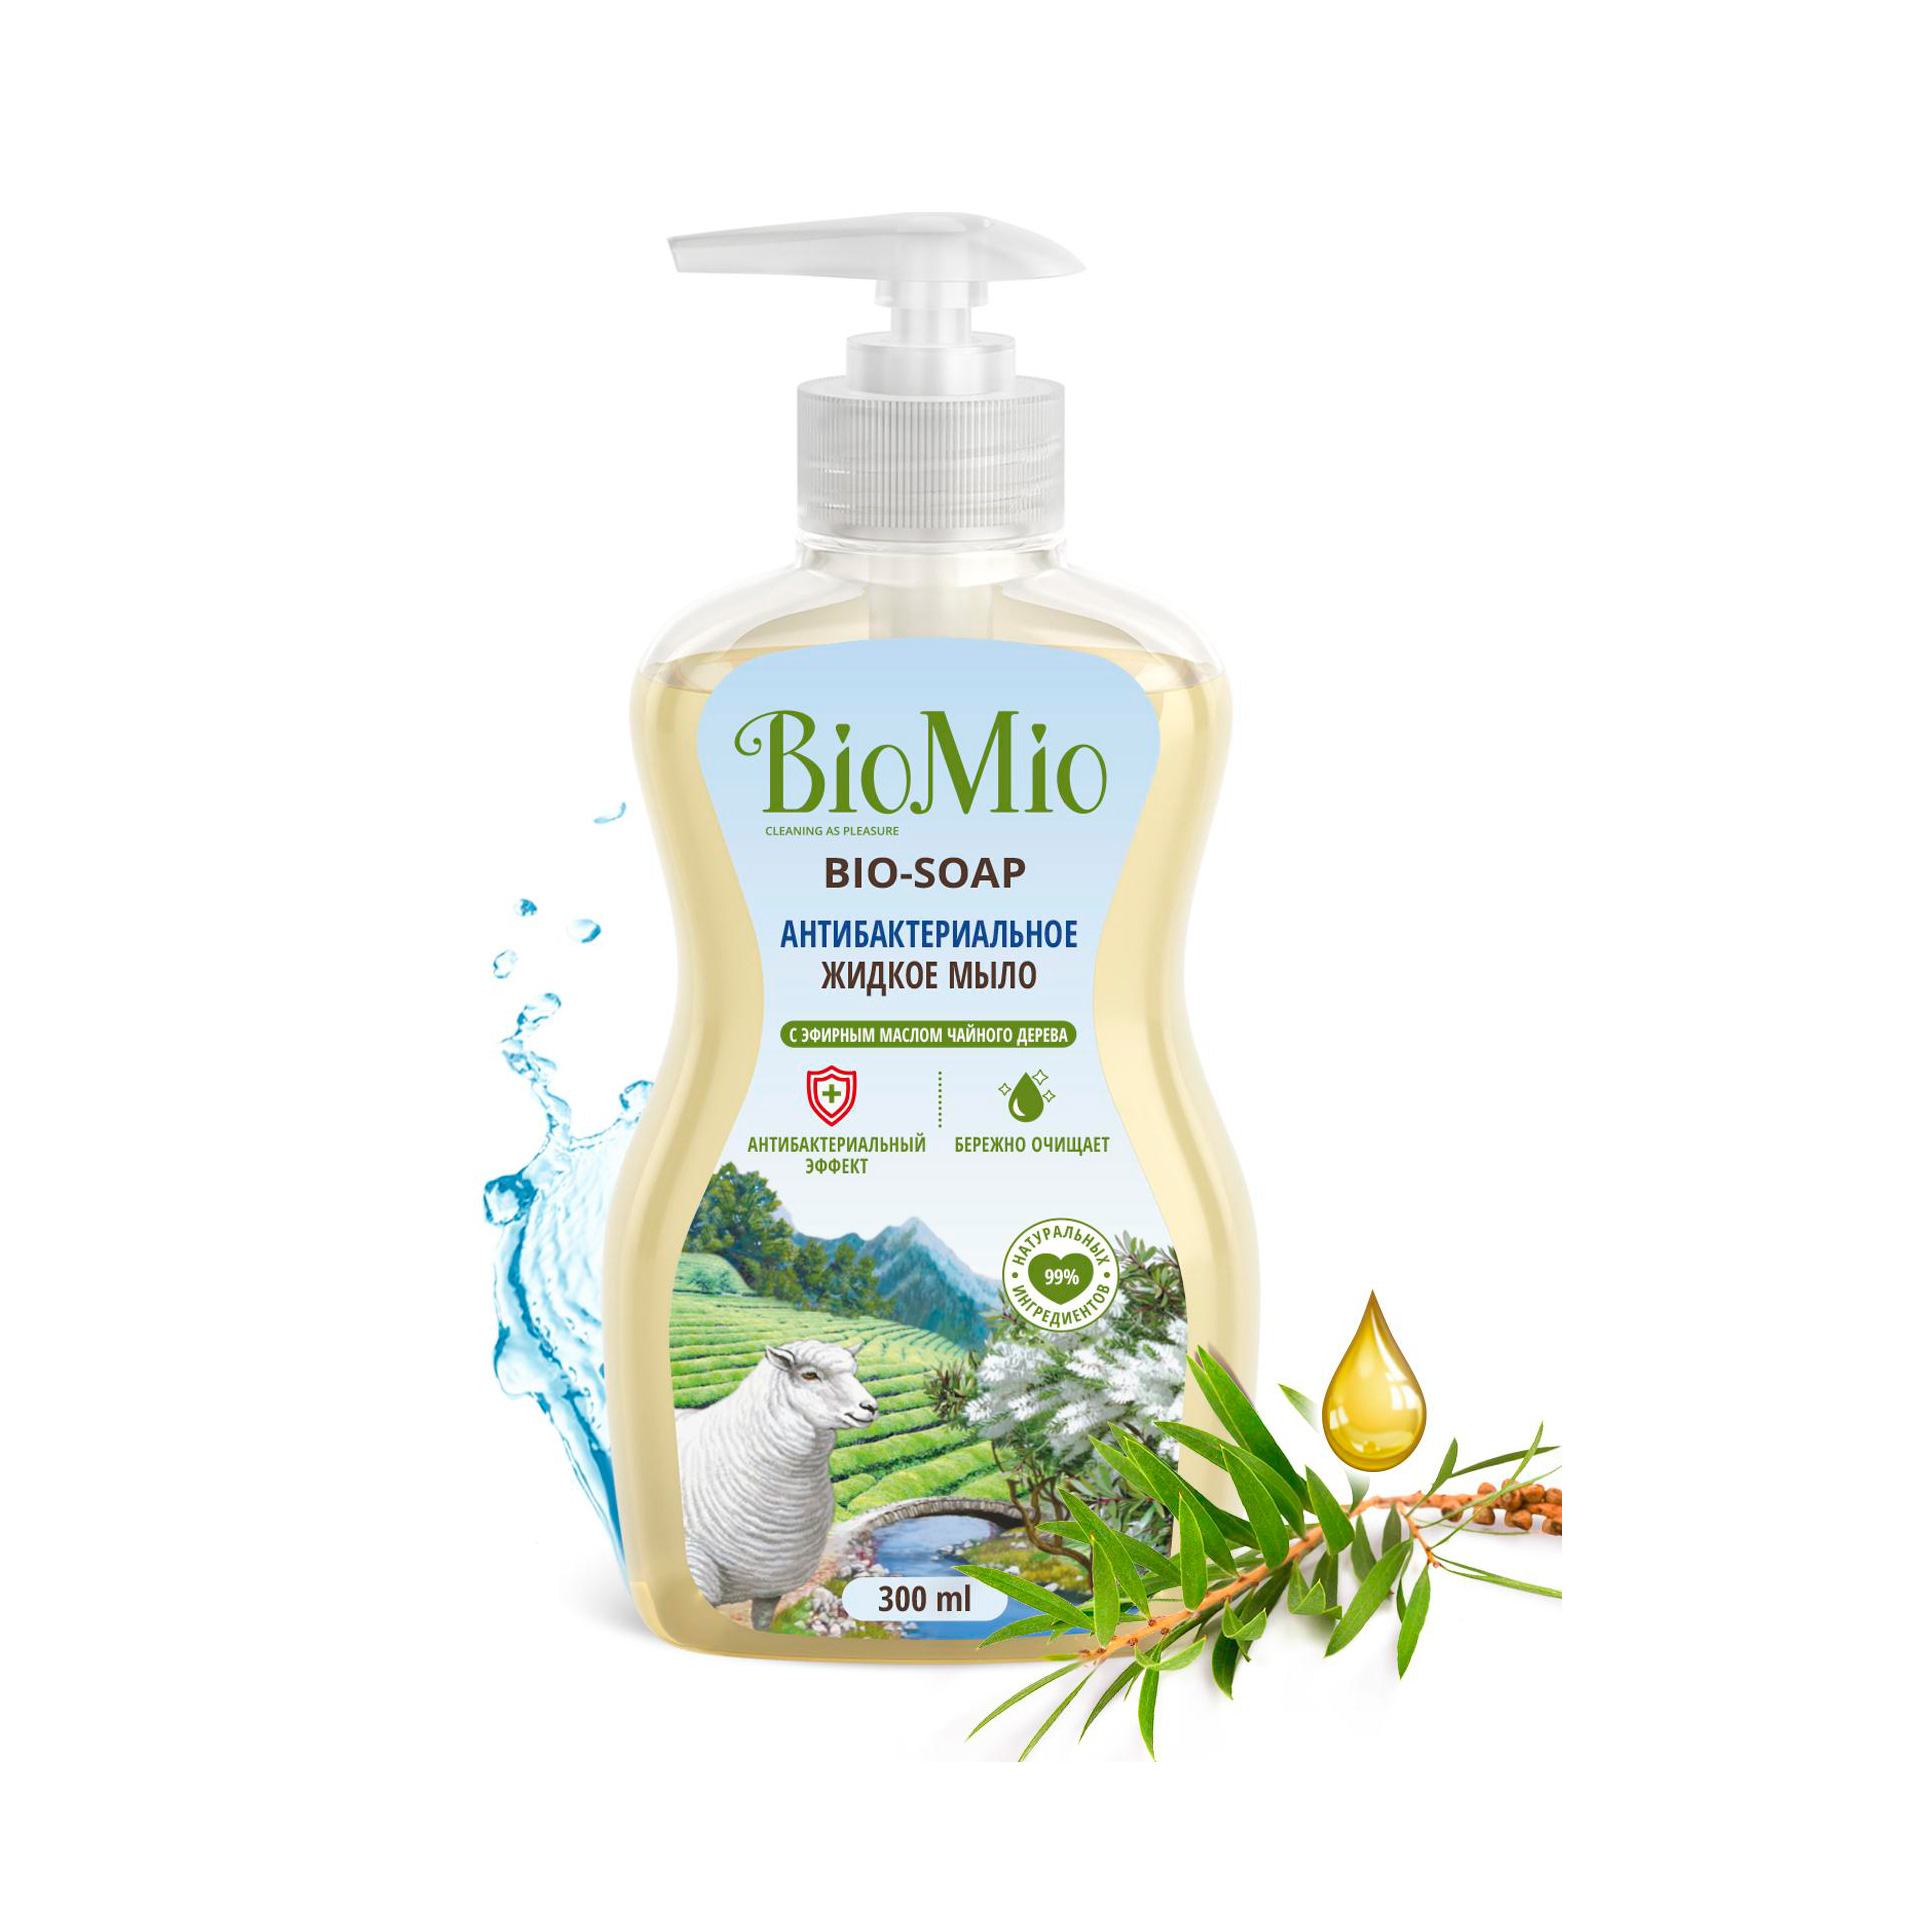 Мыло антибактериальное жидкое BioMio Bio-soap с маслом чайного дерева  300 мл патчи глэм с салициловой кислотой и маслом чайного дерева в уп 12шт 11г